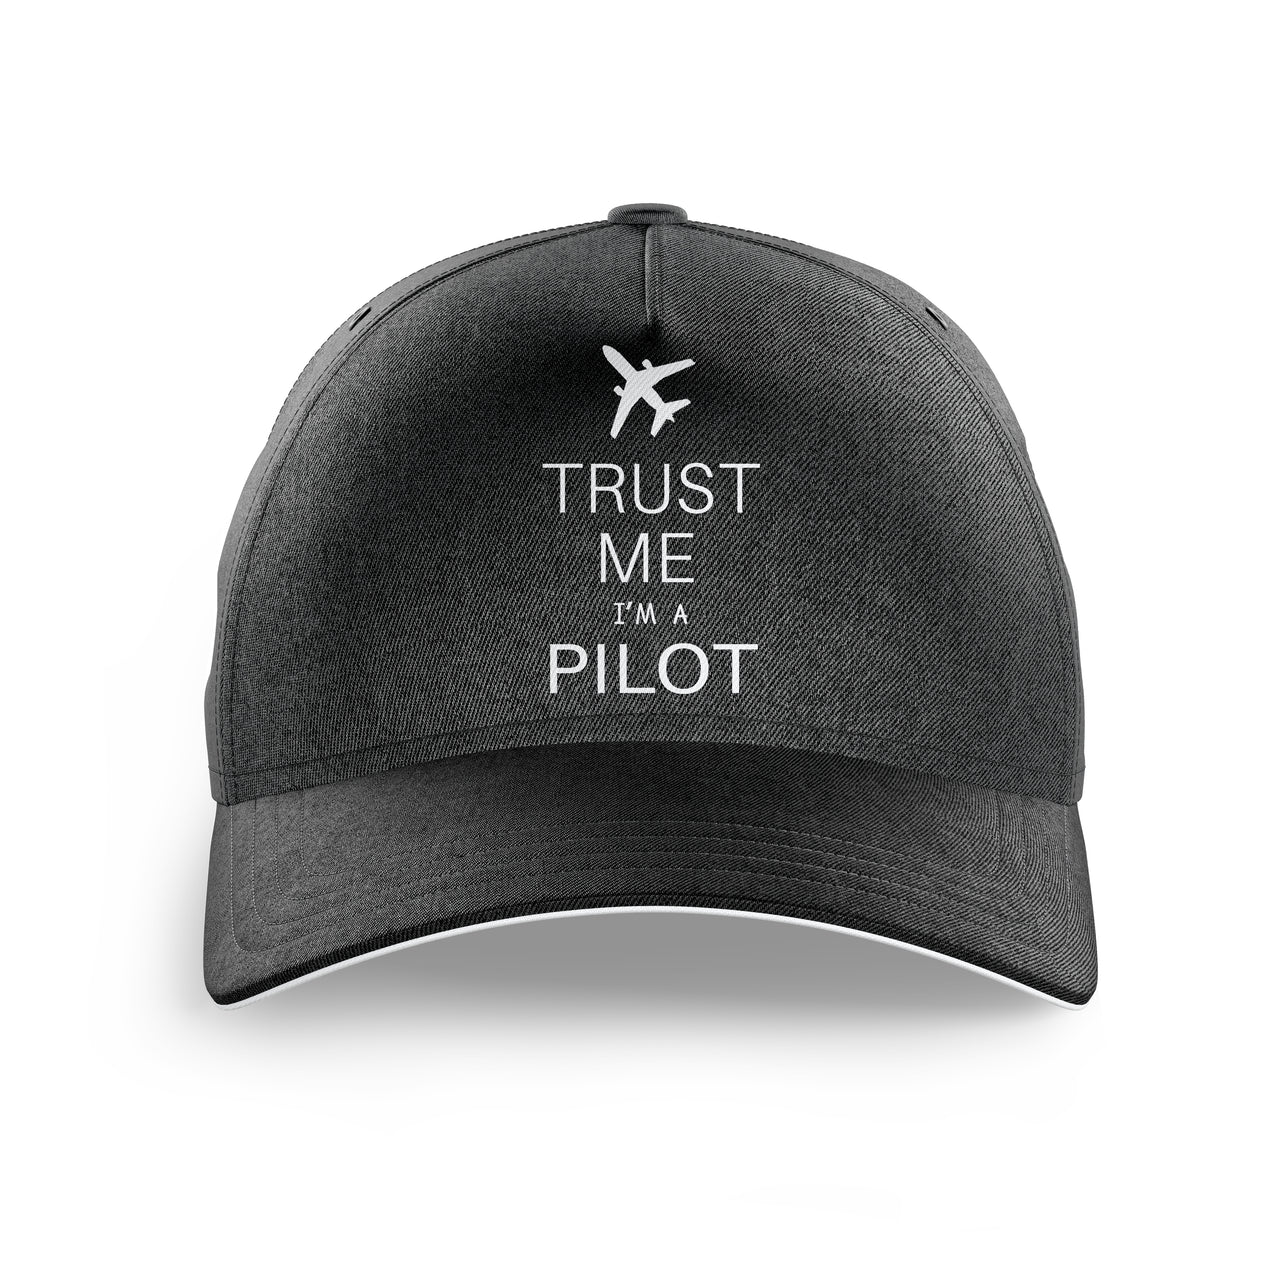 Trust Me I'm a Pilot 2 Printed Hats